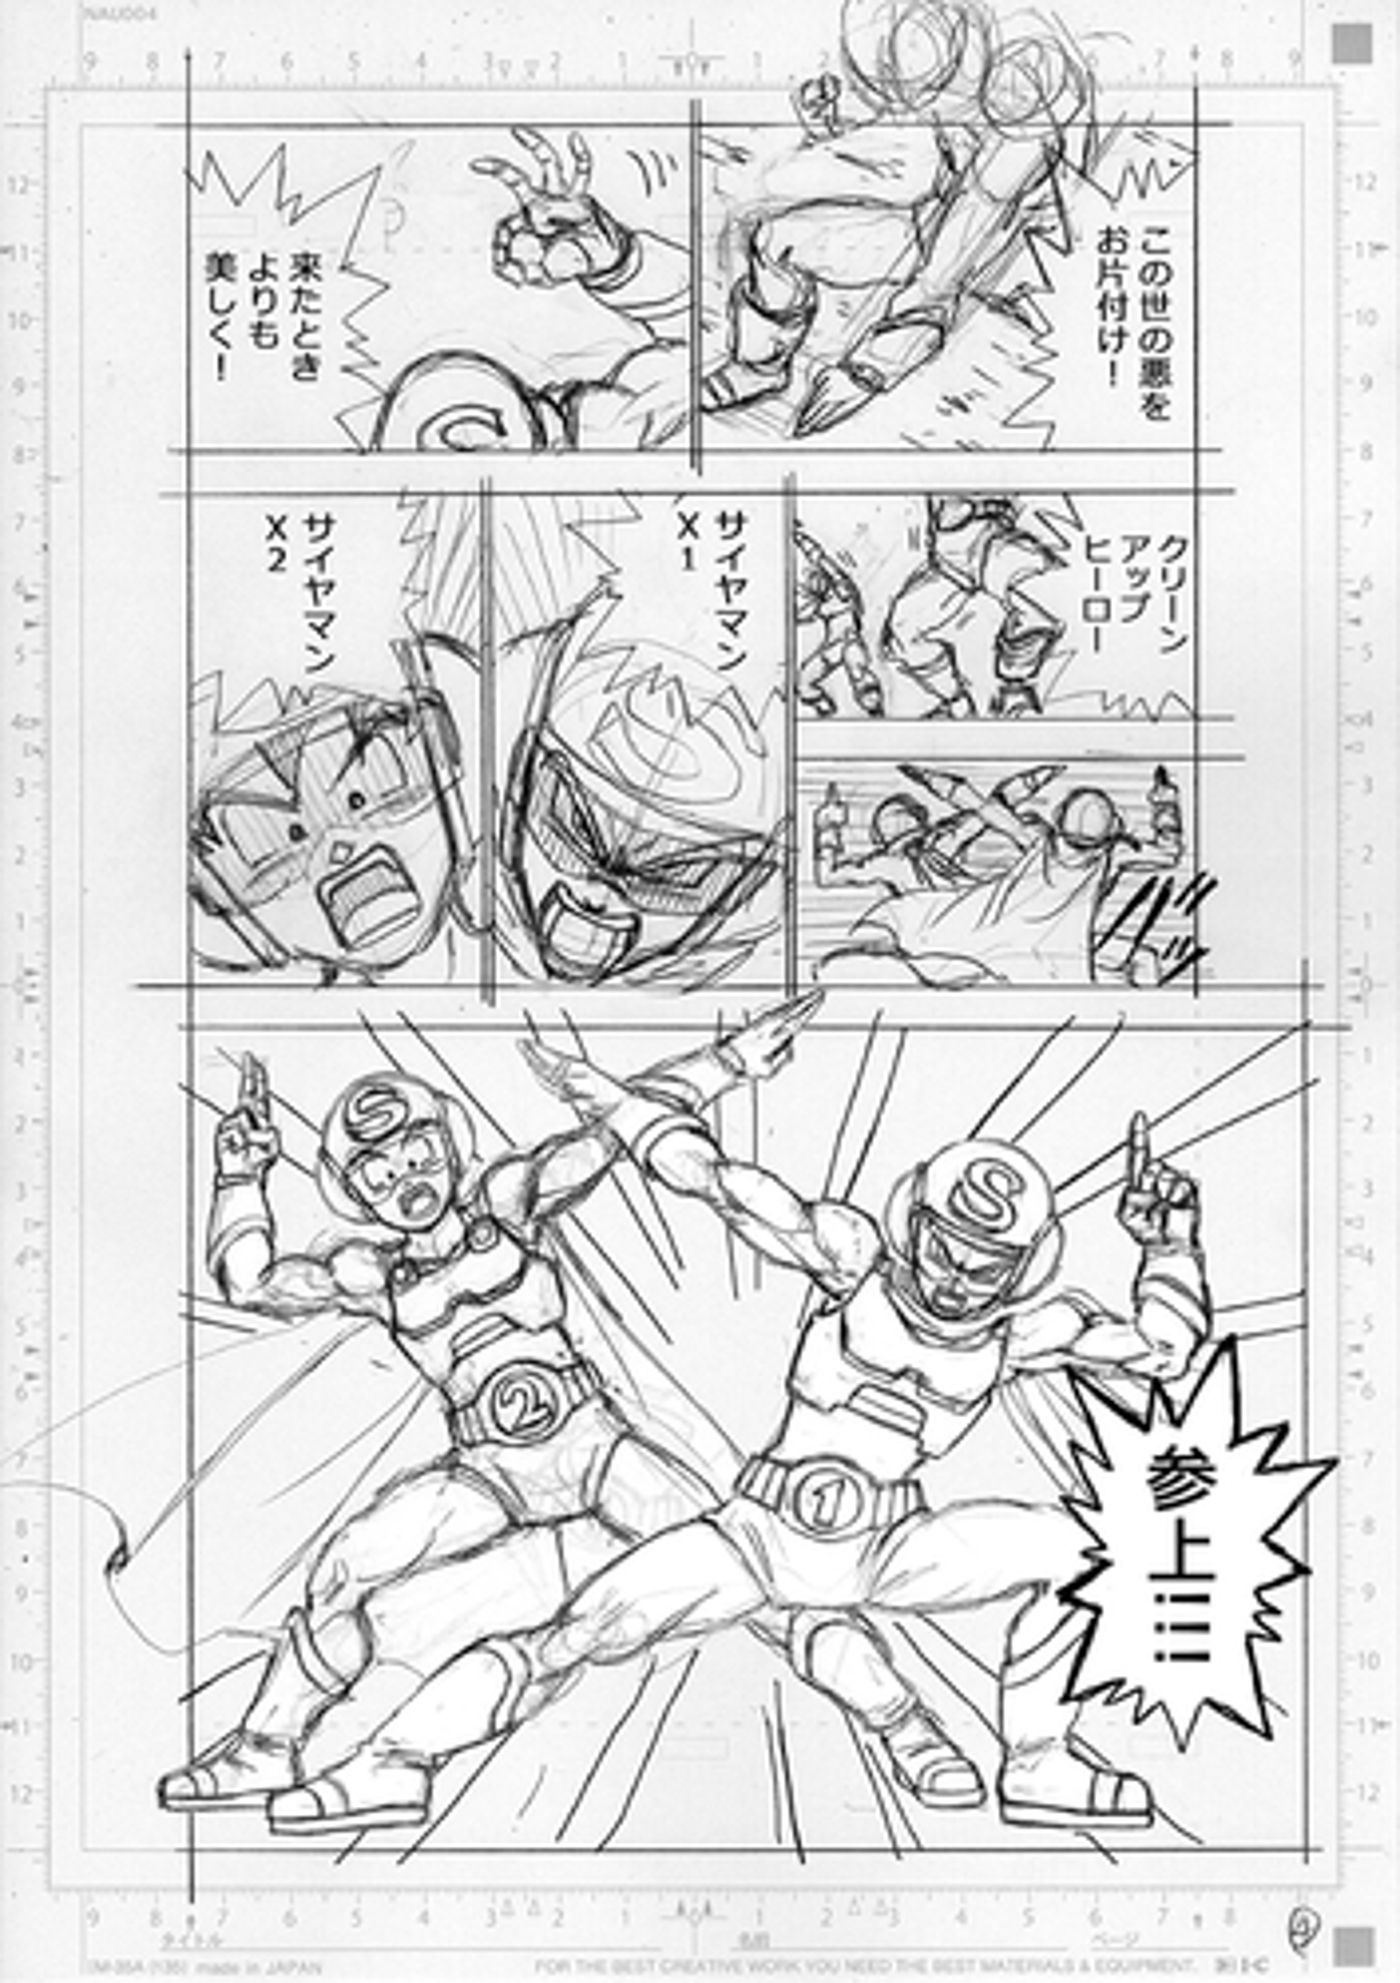 Goten et Trunks dans l'aperçu officiel du chapitre 88 de Dragon Ball Super.